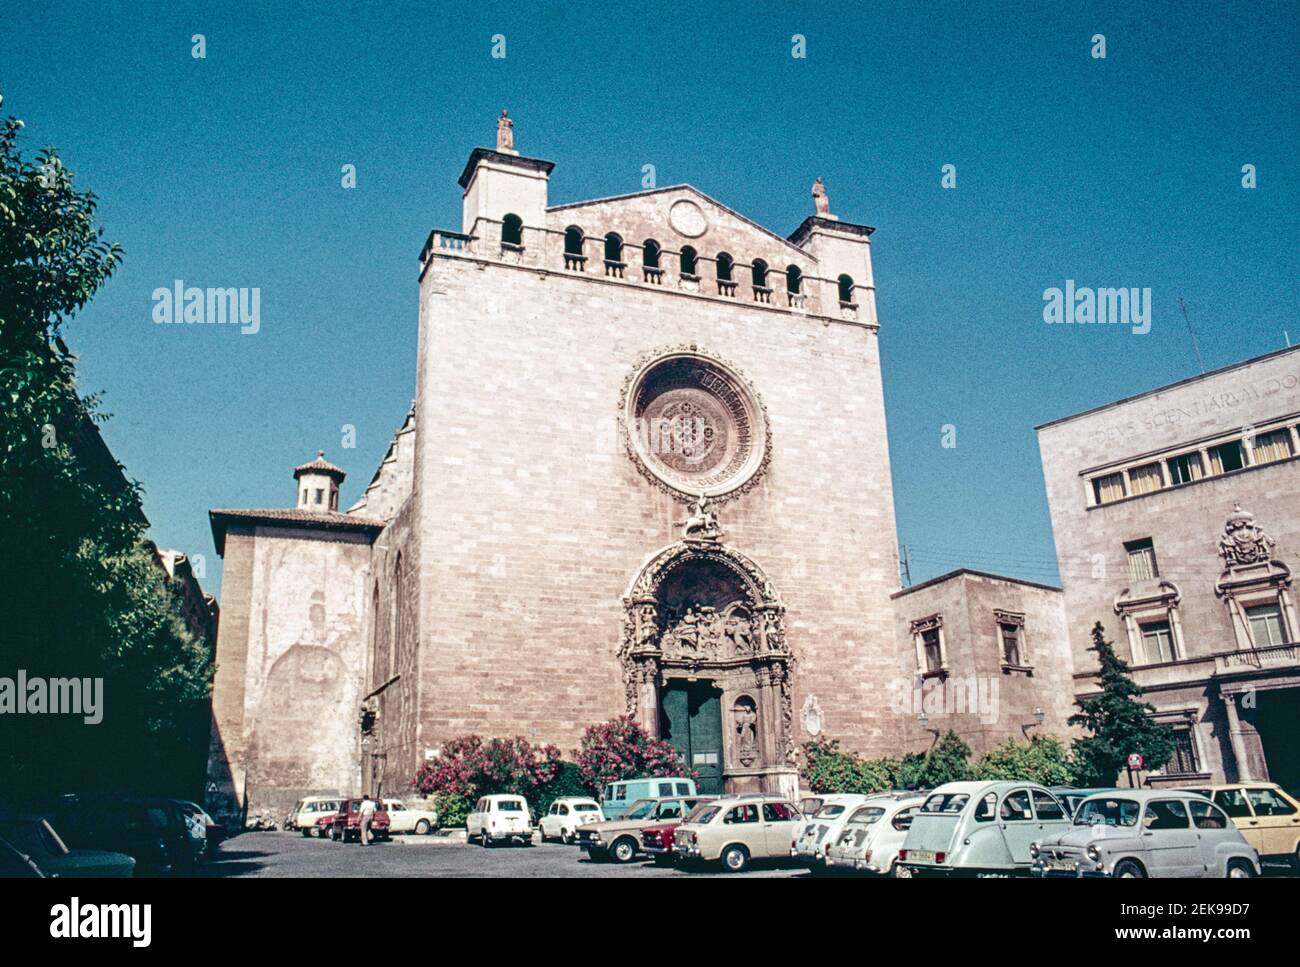 Balayage d'archives de Palma Majorque environ 1975. L'église Saint François avec d'impressionnantes sculptures sur la porte. A l’avant-garde, les voitures des années 70 sont garées Banque D'Images